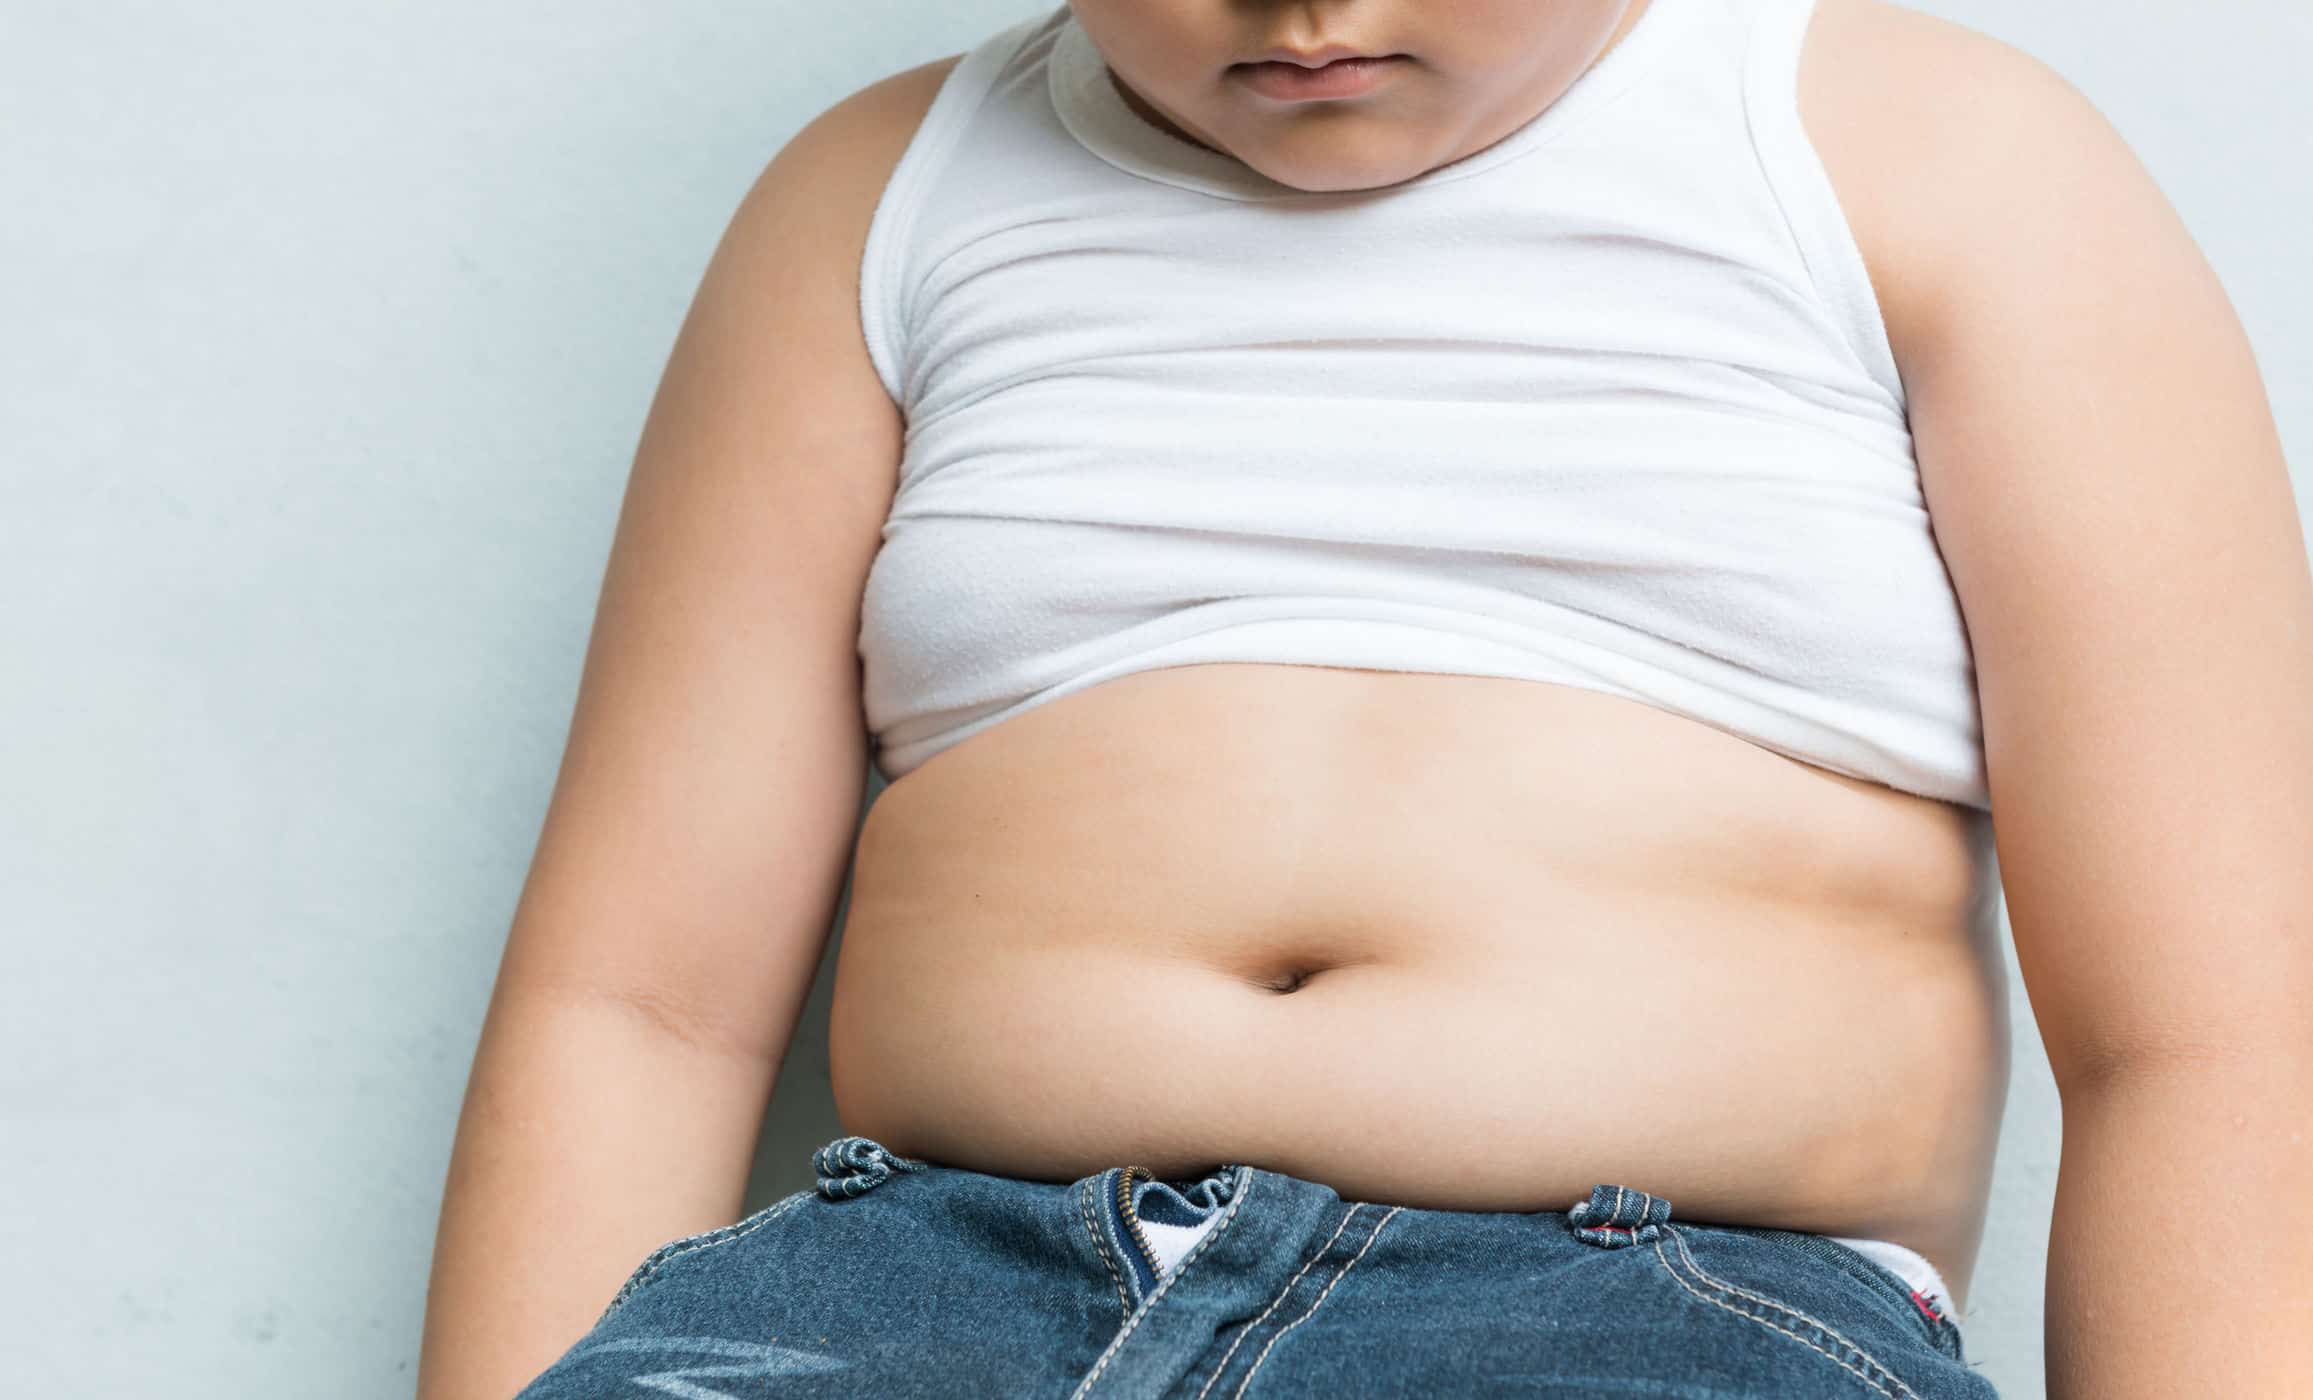 "뚱뚱하다"라고 부르면 아이들의 체중이 증가하는 것으로 밝혀졌습니다.